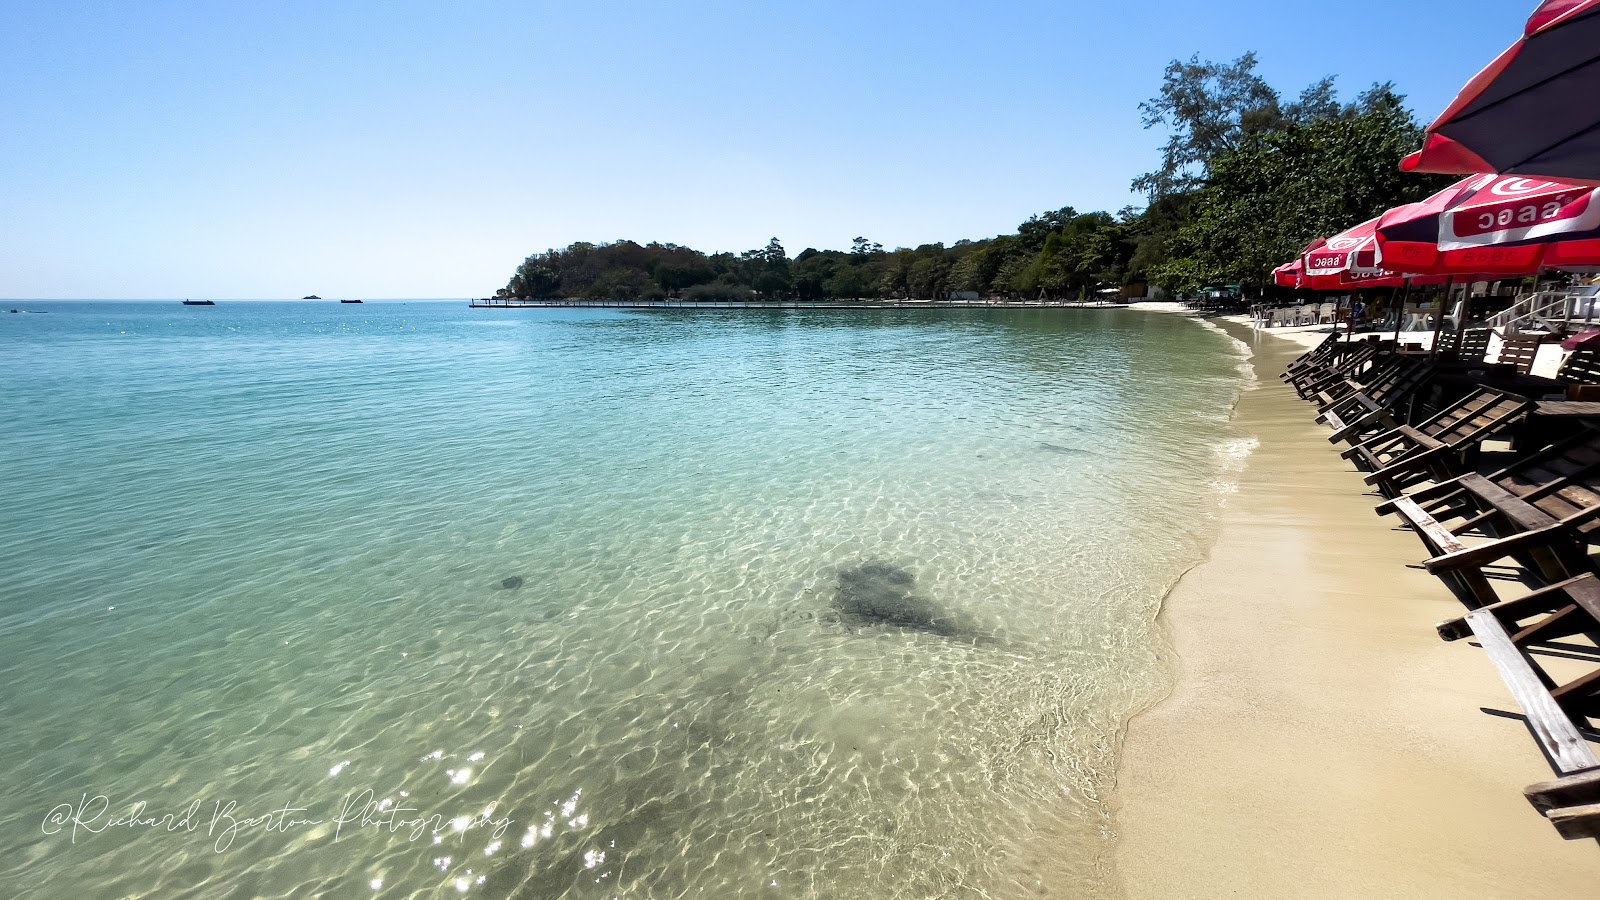 Zdjęcie Wong Duean Beach - popularne miejsce wśród znawców relaksu